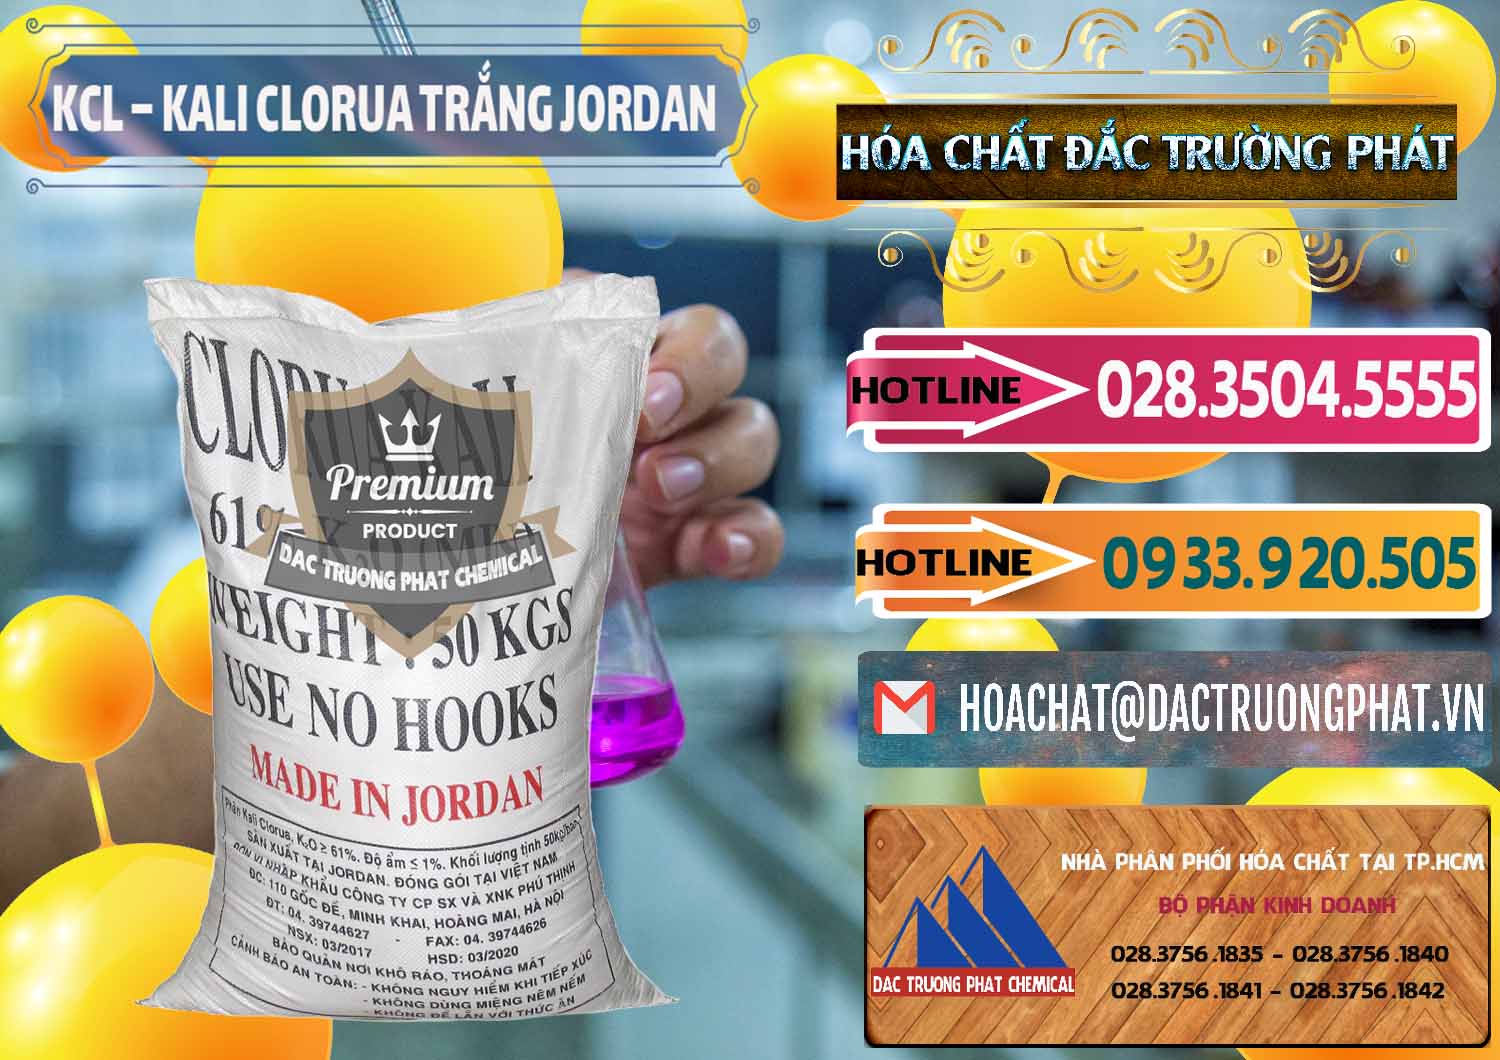 Chuyên bán ( cung ứng ) KCL – Kali Clorua Trắng Jordan - 0088 - Nhà phân phối ( bán ) hóa chất tại TP.HCM - dactruongphat.vn